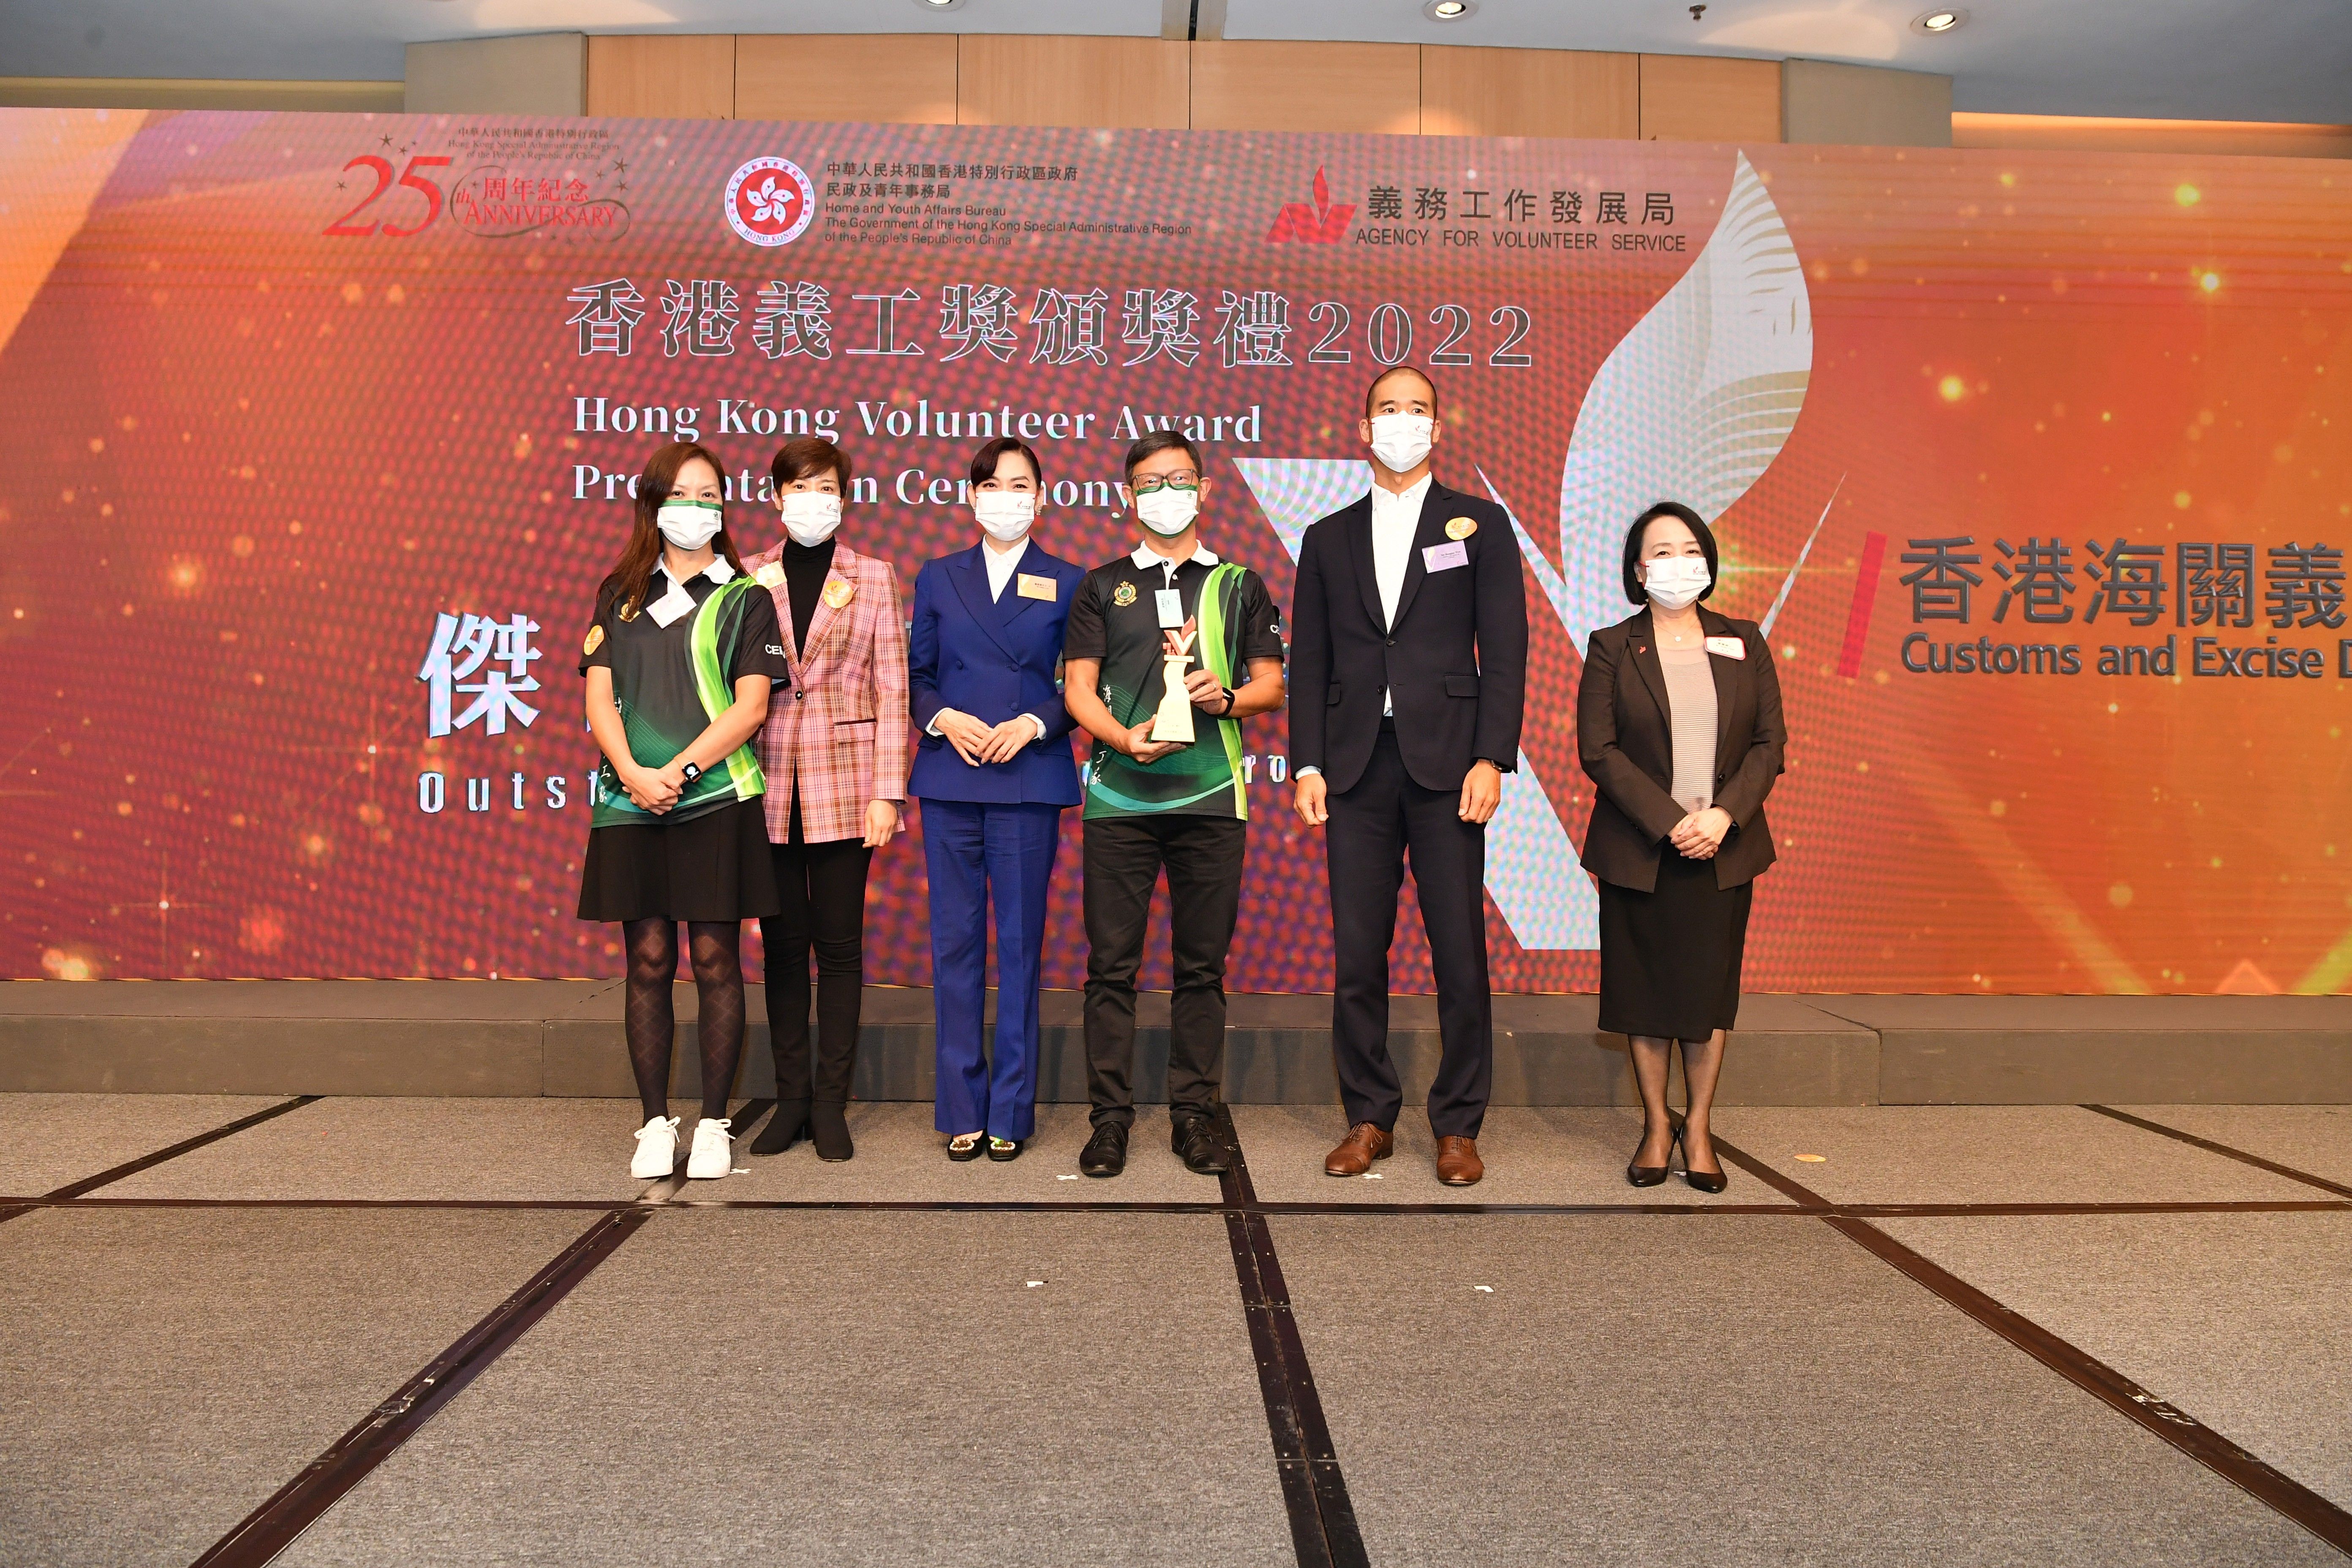 義務工作發展局頒發「傑出義工團隊」給香港海關義工隊。